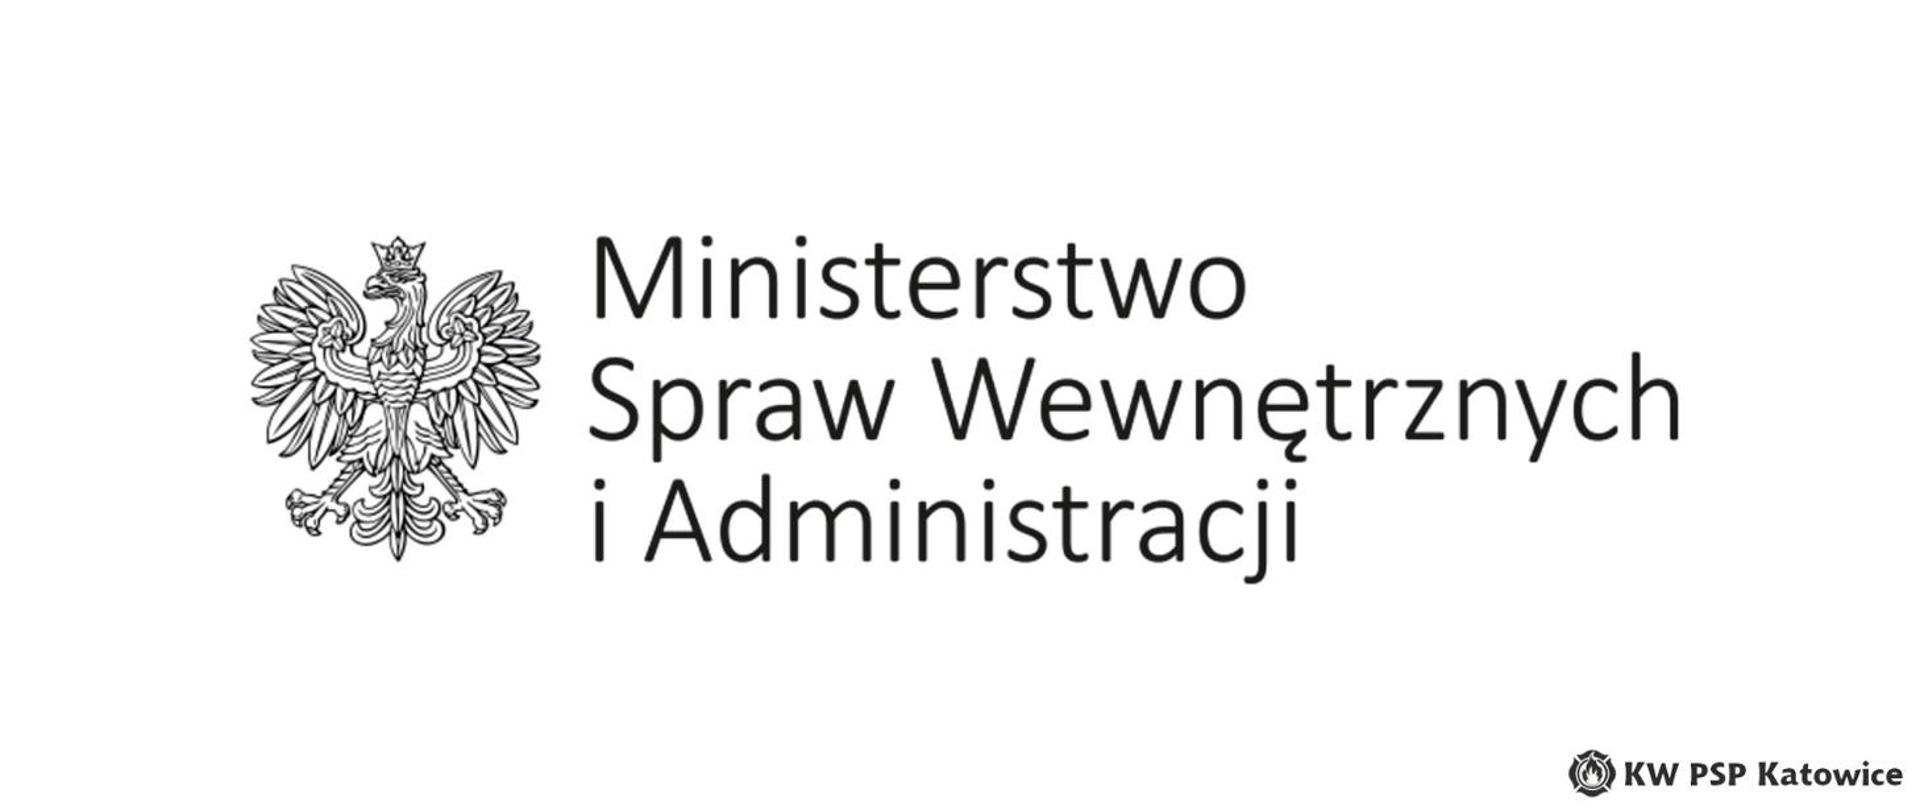 Ilustracja przedstawia na białym tle, na środku czarno-biały logotyp Ministerstwa Spraw Wewnętrznych, który składa się z czarno-białego orła oraz napisu Ministerstwo Spraw Wewnętrznych i Administracji. W prawym dolnym rogu napis KW PSP Katowice